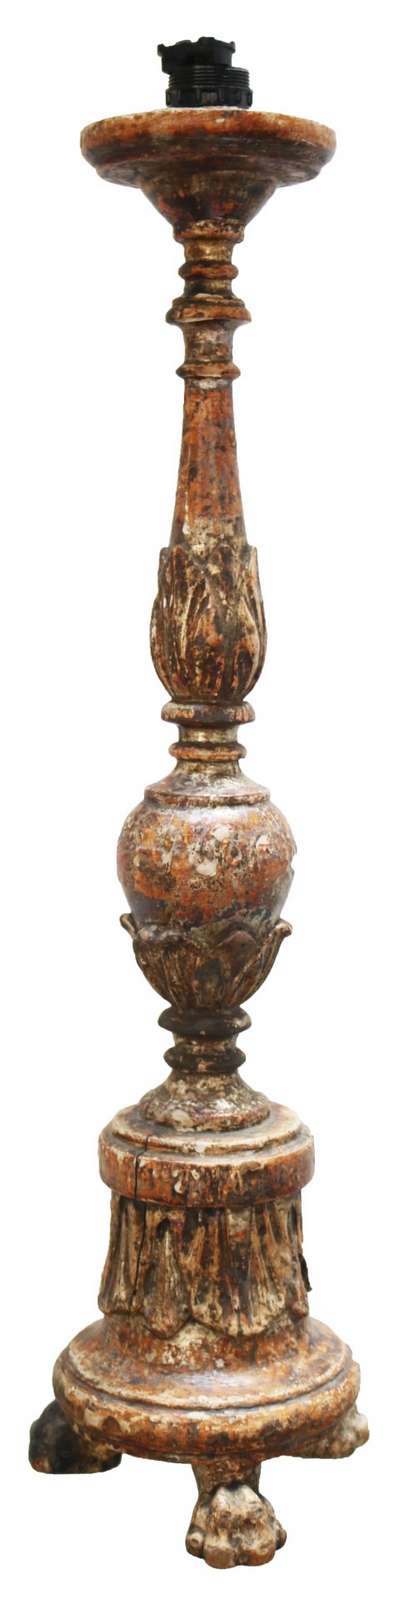 Antico candelabro in legno. Epoca 1700. - Lampadari e Candelabri - Mobili antichi - Prodotti - Antichità Fiorillo